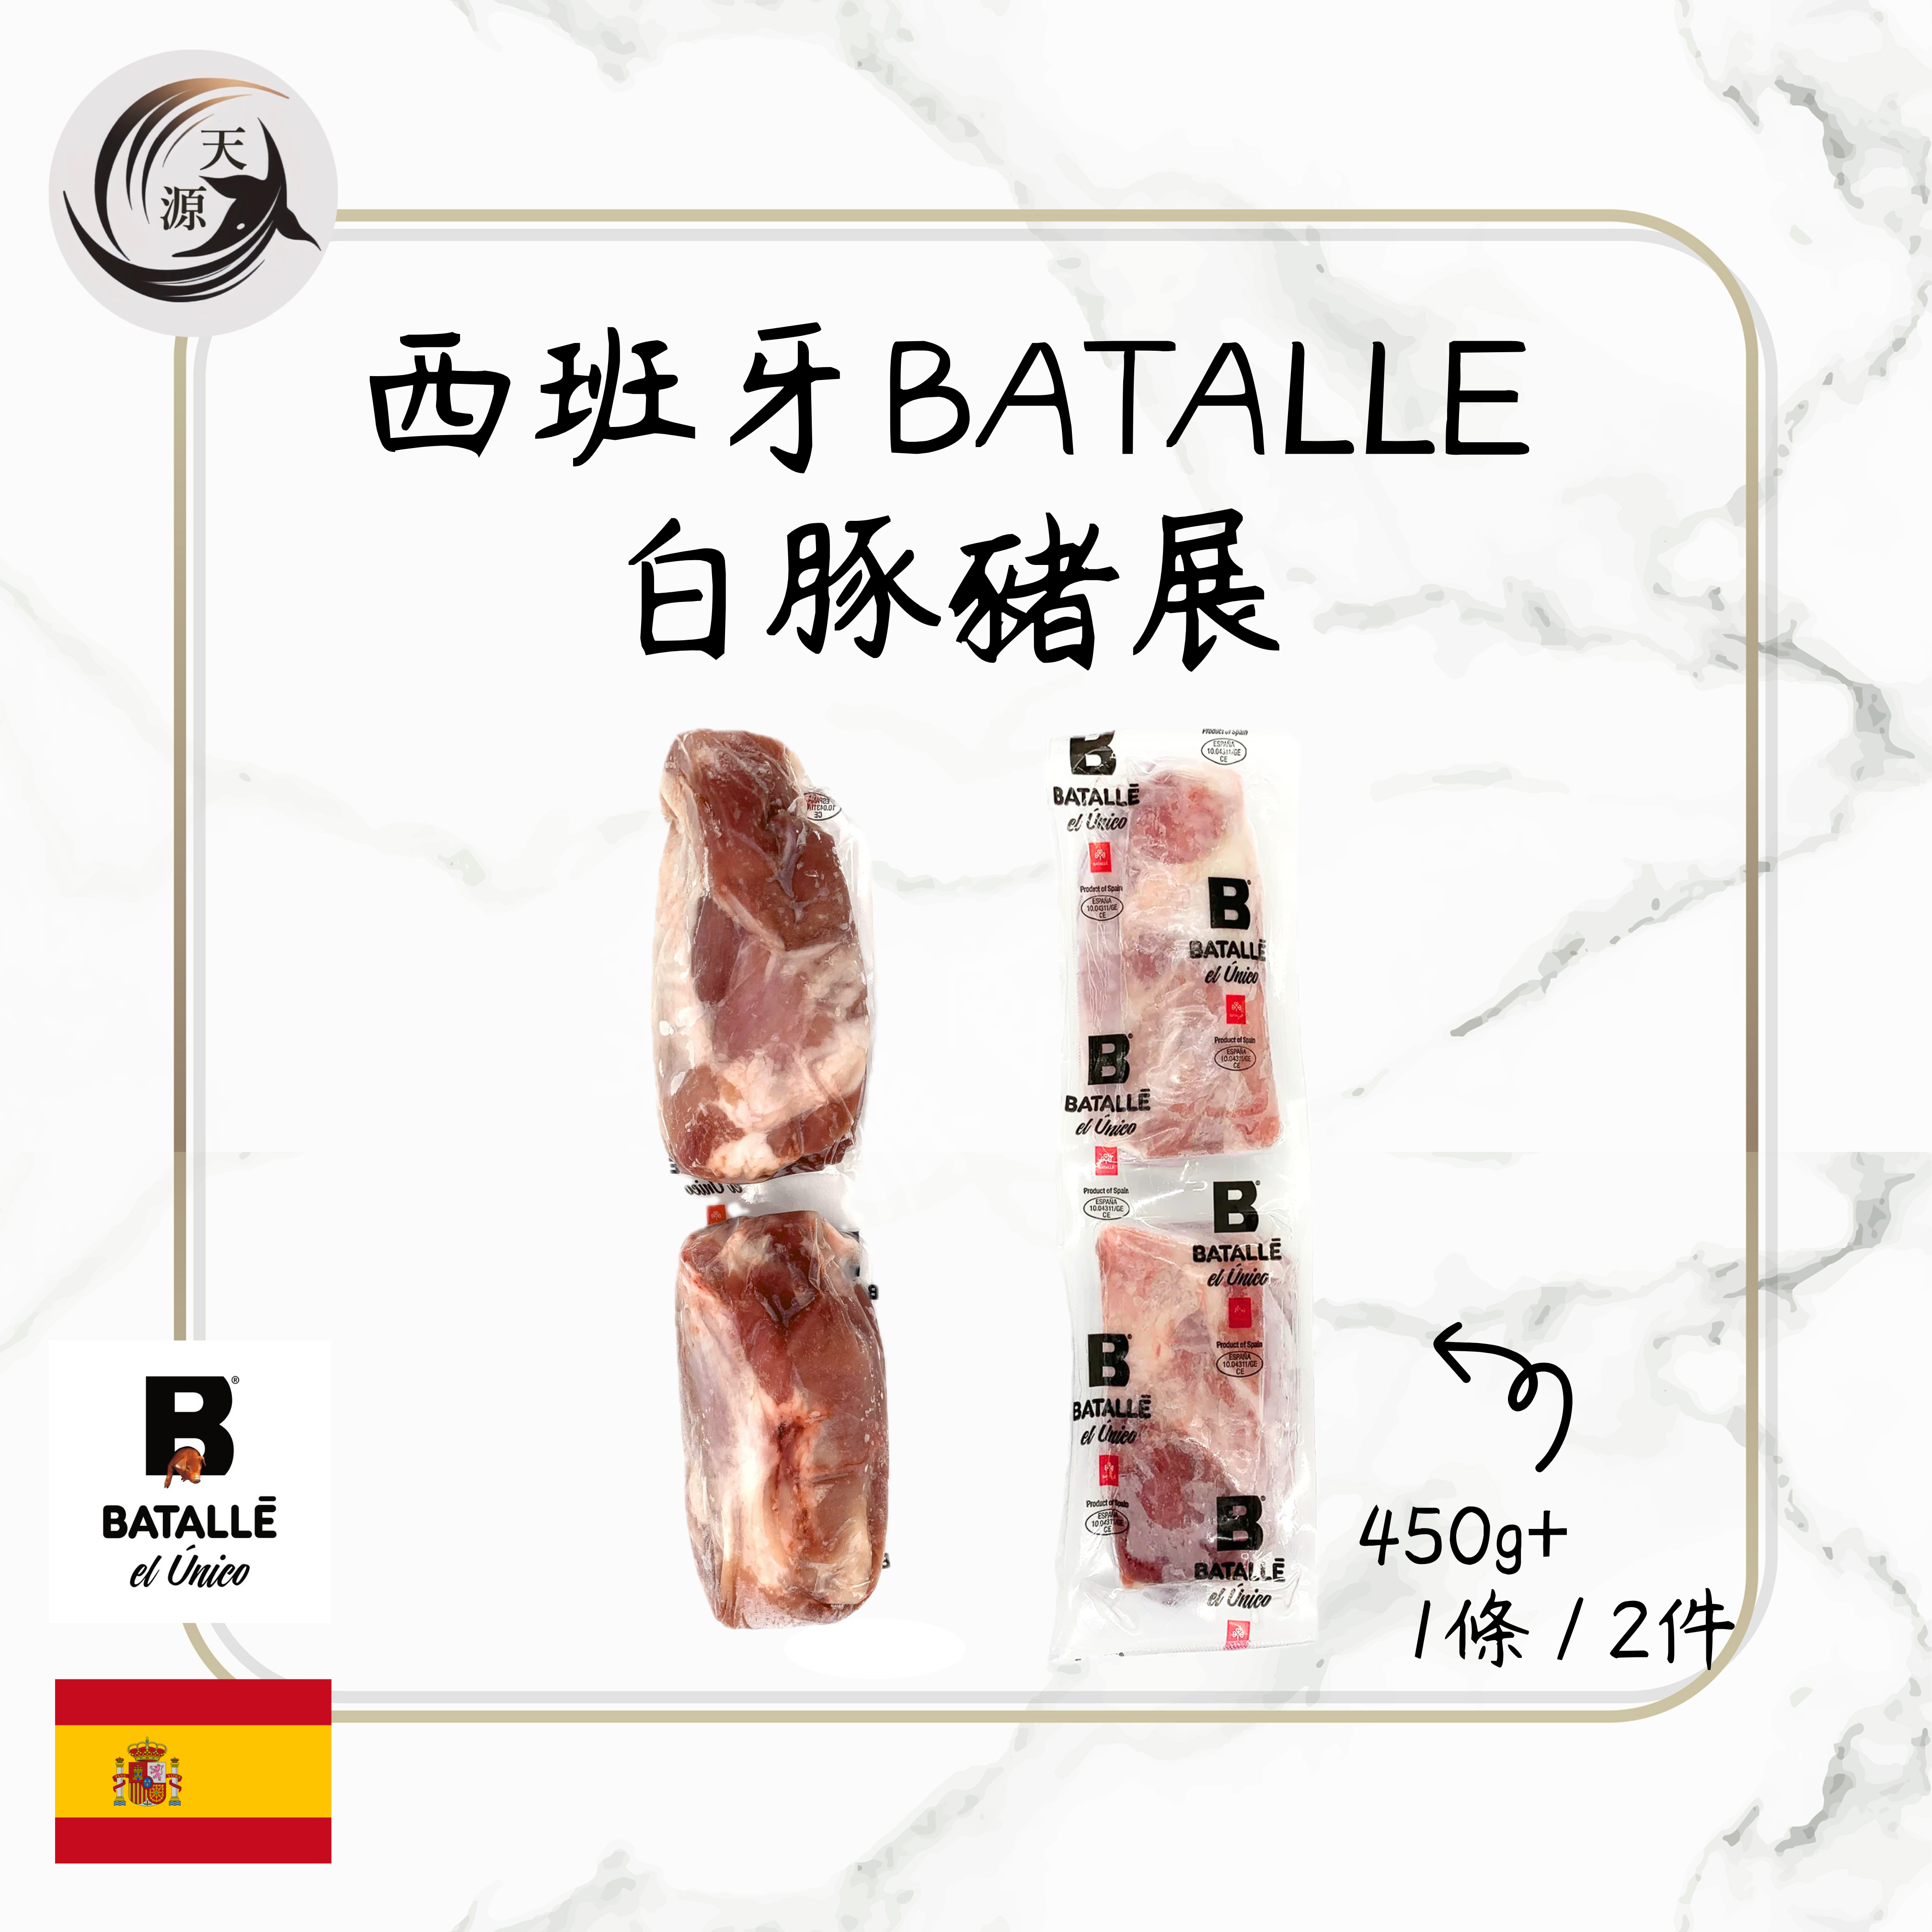 西班牙BATALLE 白豚豬展 450g+